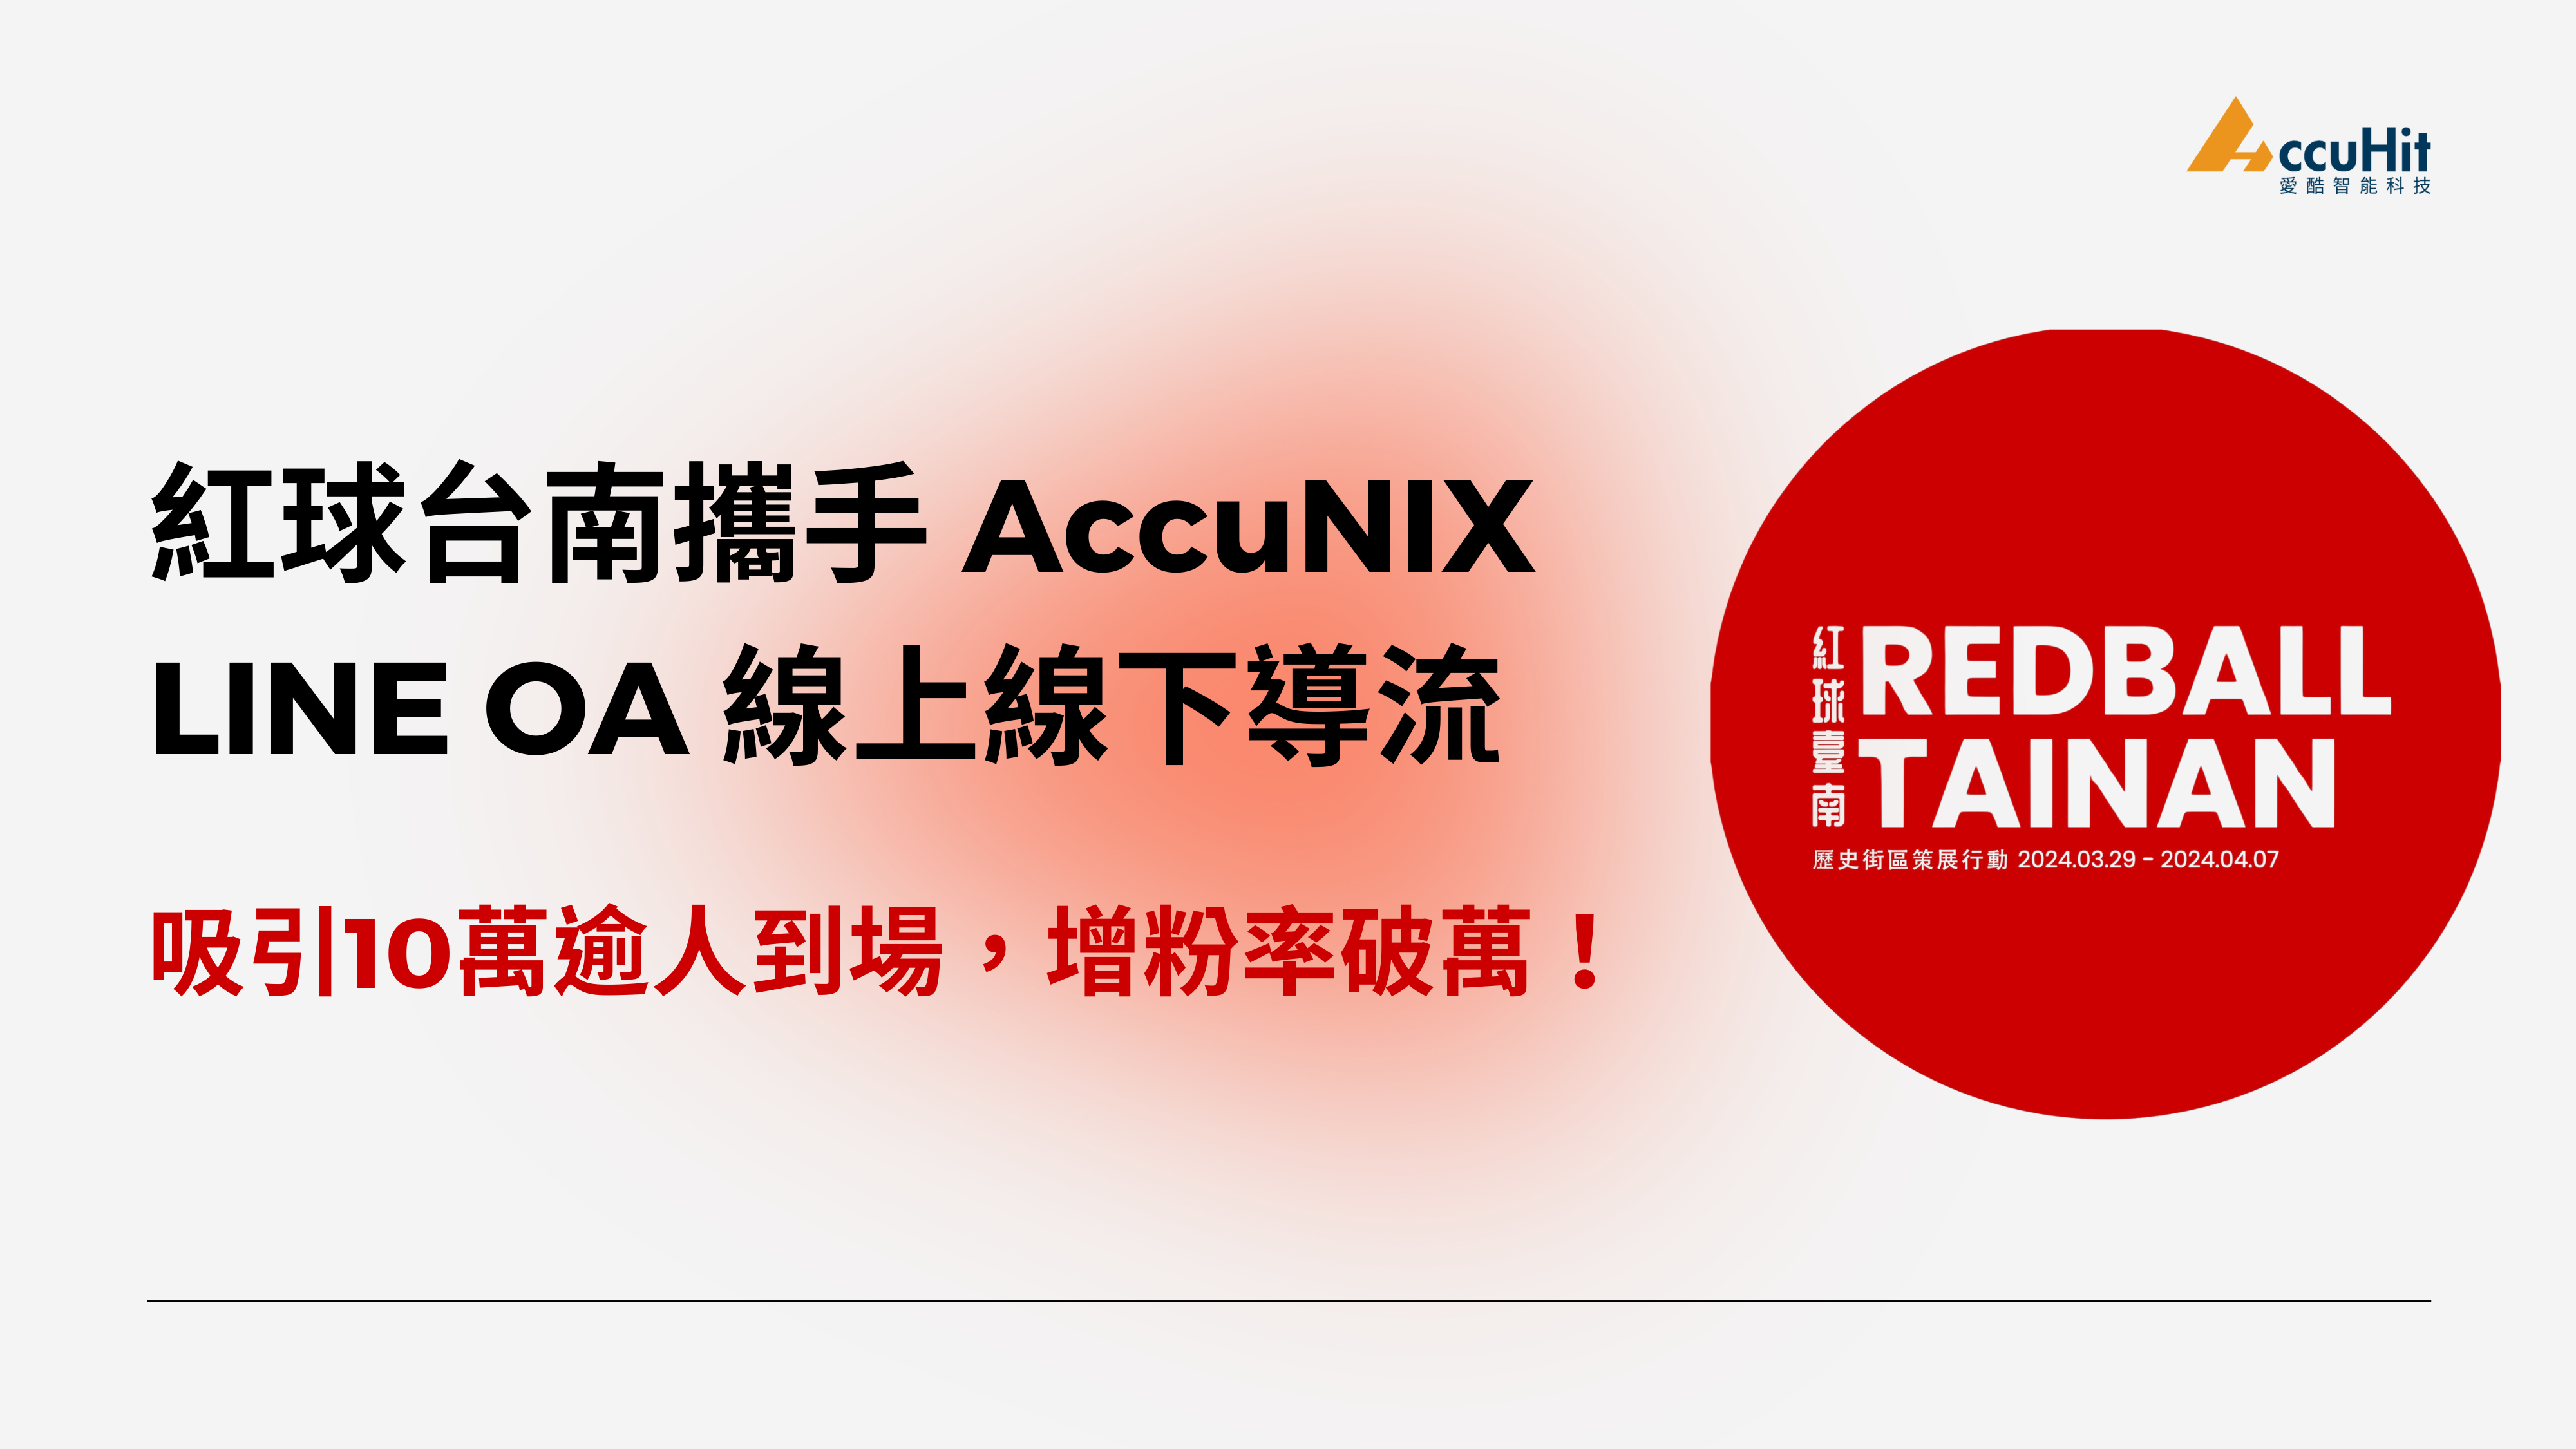 紅球台南計畫攜手 AccuNIX，LINE OA 線上線下導流，吸引10萬逾人到場，增粉率破萬！